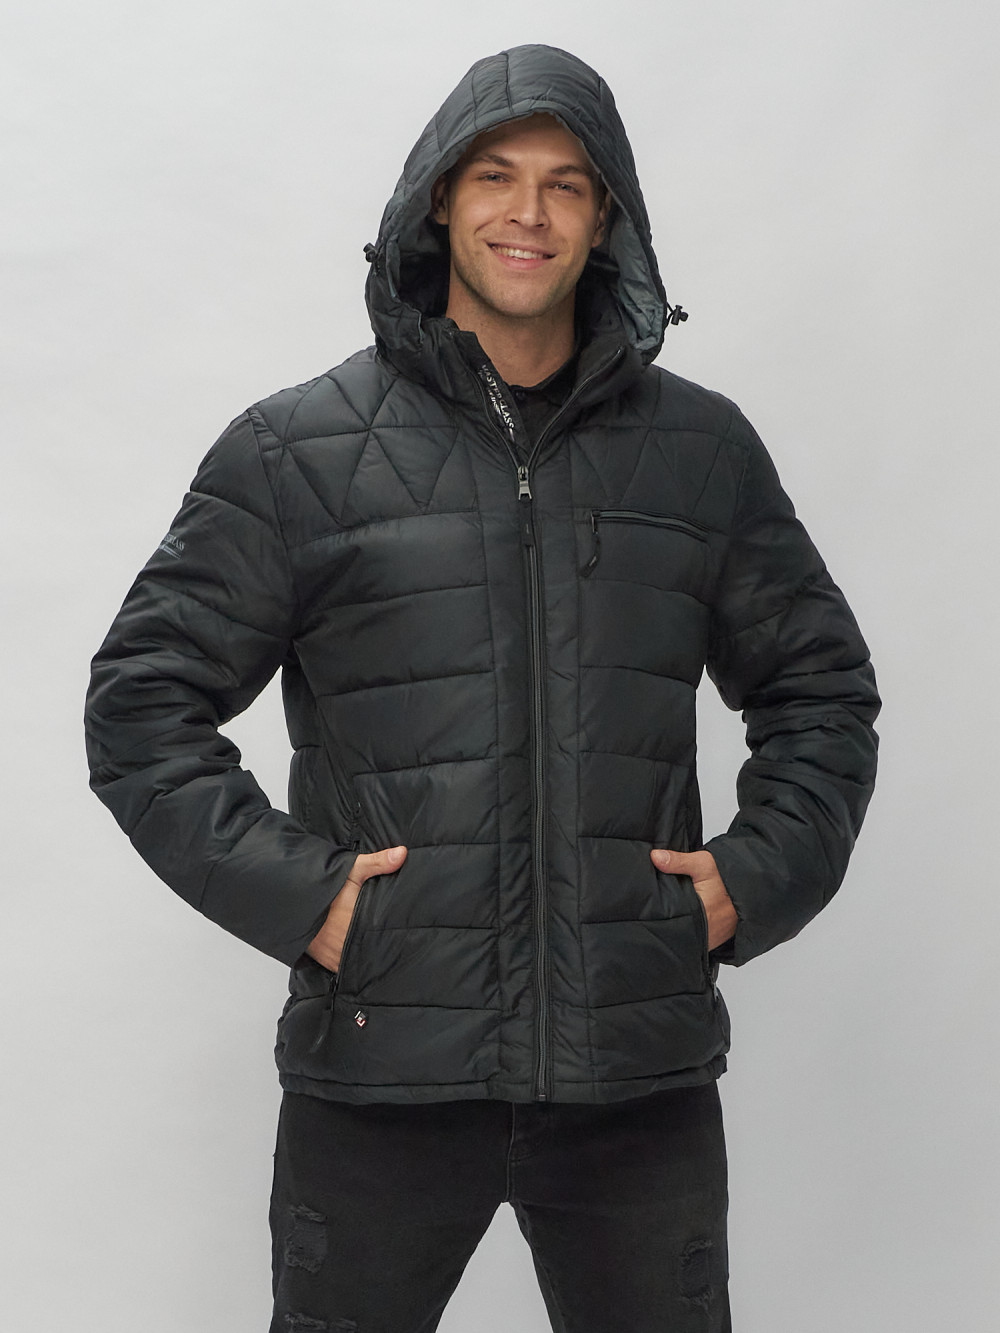 Купить куртку мужскую спортивную весеннюю оптом от производителя недорого в Москве 62187Ch 1